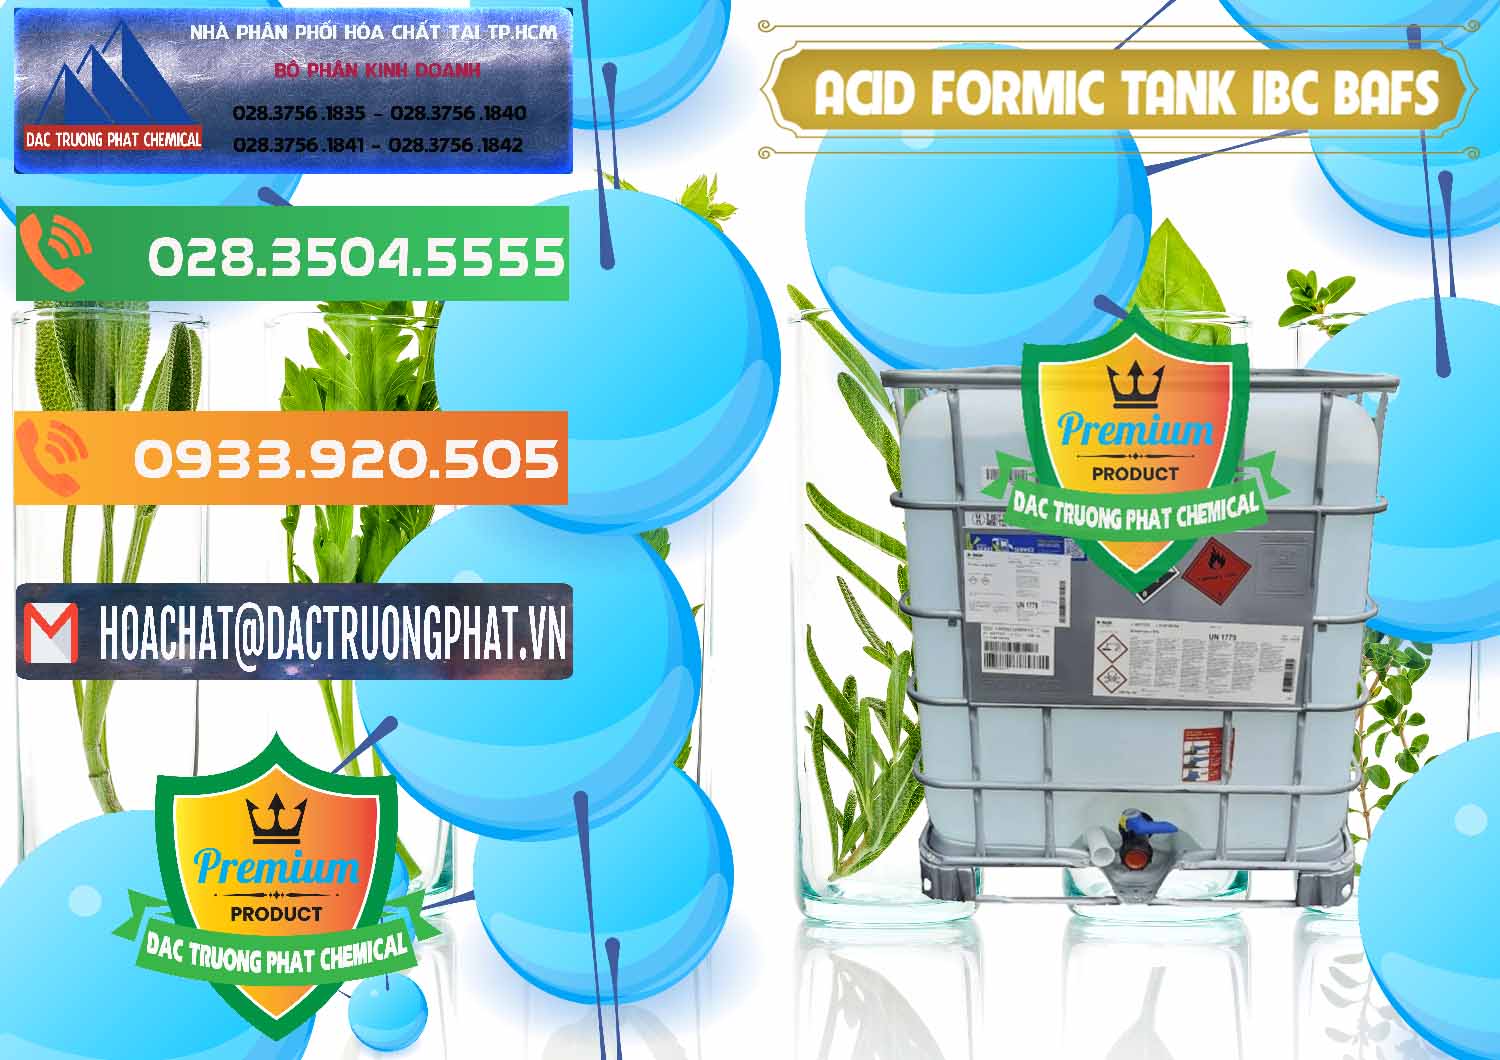 Bán _ cung cấp Acid Formic - Axit Formic Tank - Bồn IBC BASF Đức - 0366 - Đơn vị chuyên cung cấp & bán hóa chất tại TP.HCM - hoachatxulynuoc.com.vn